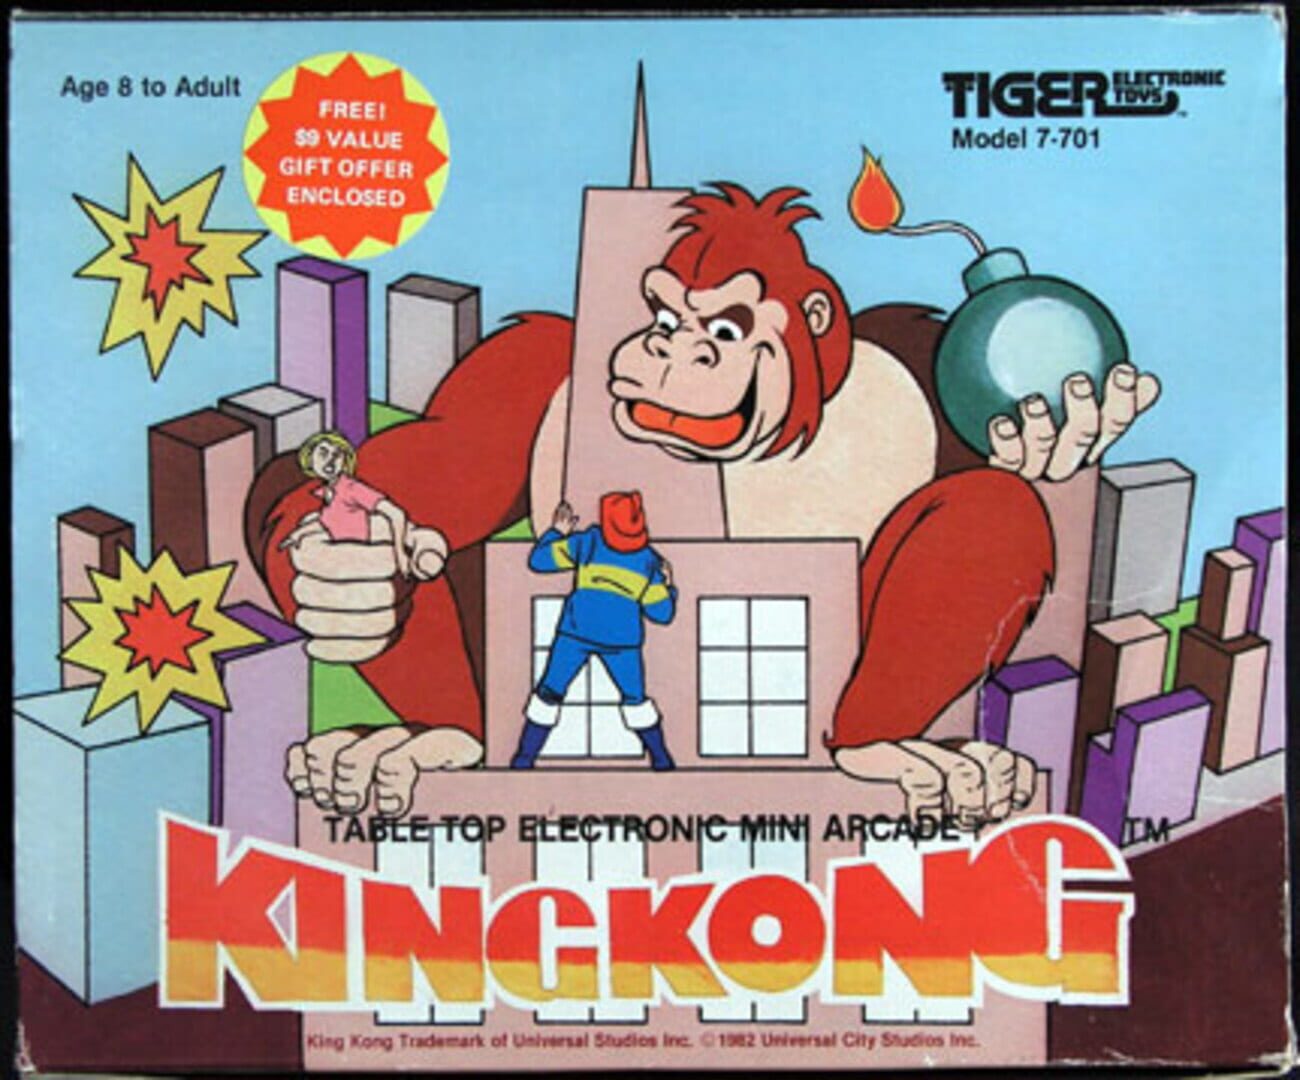 King Kong Image